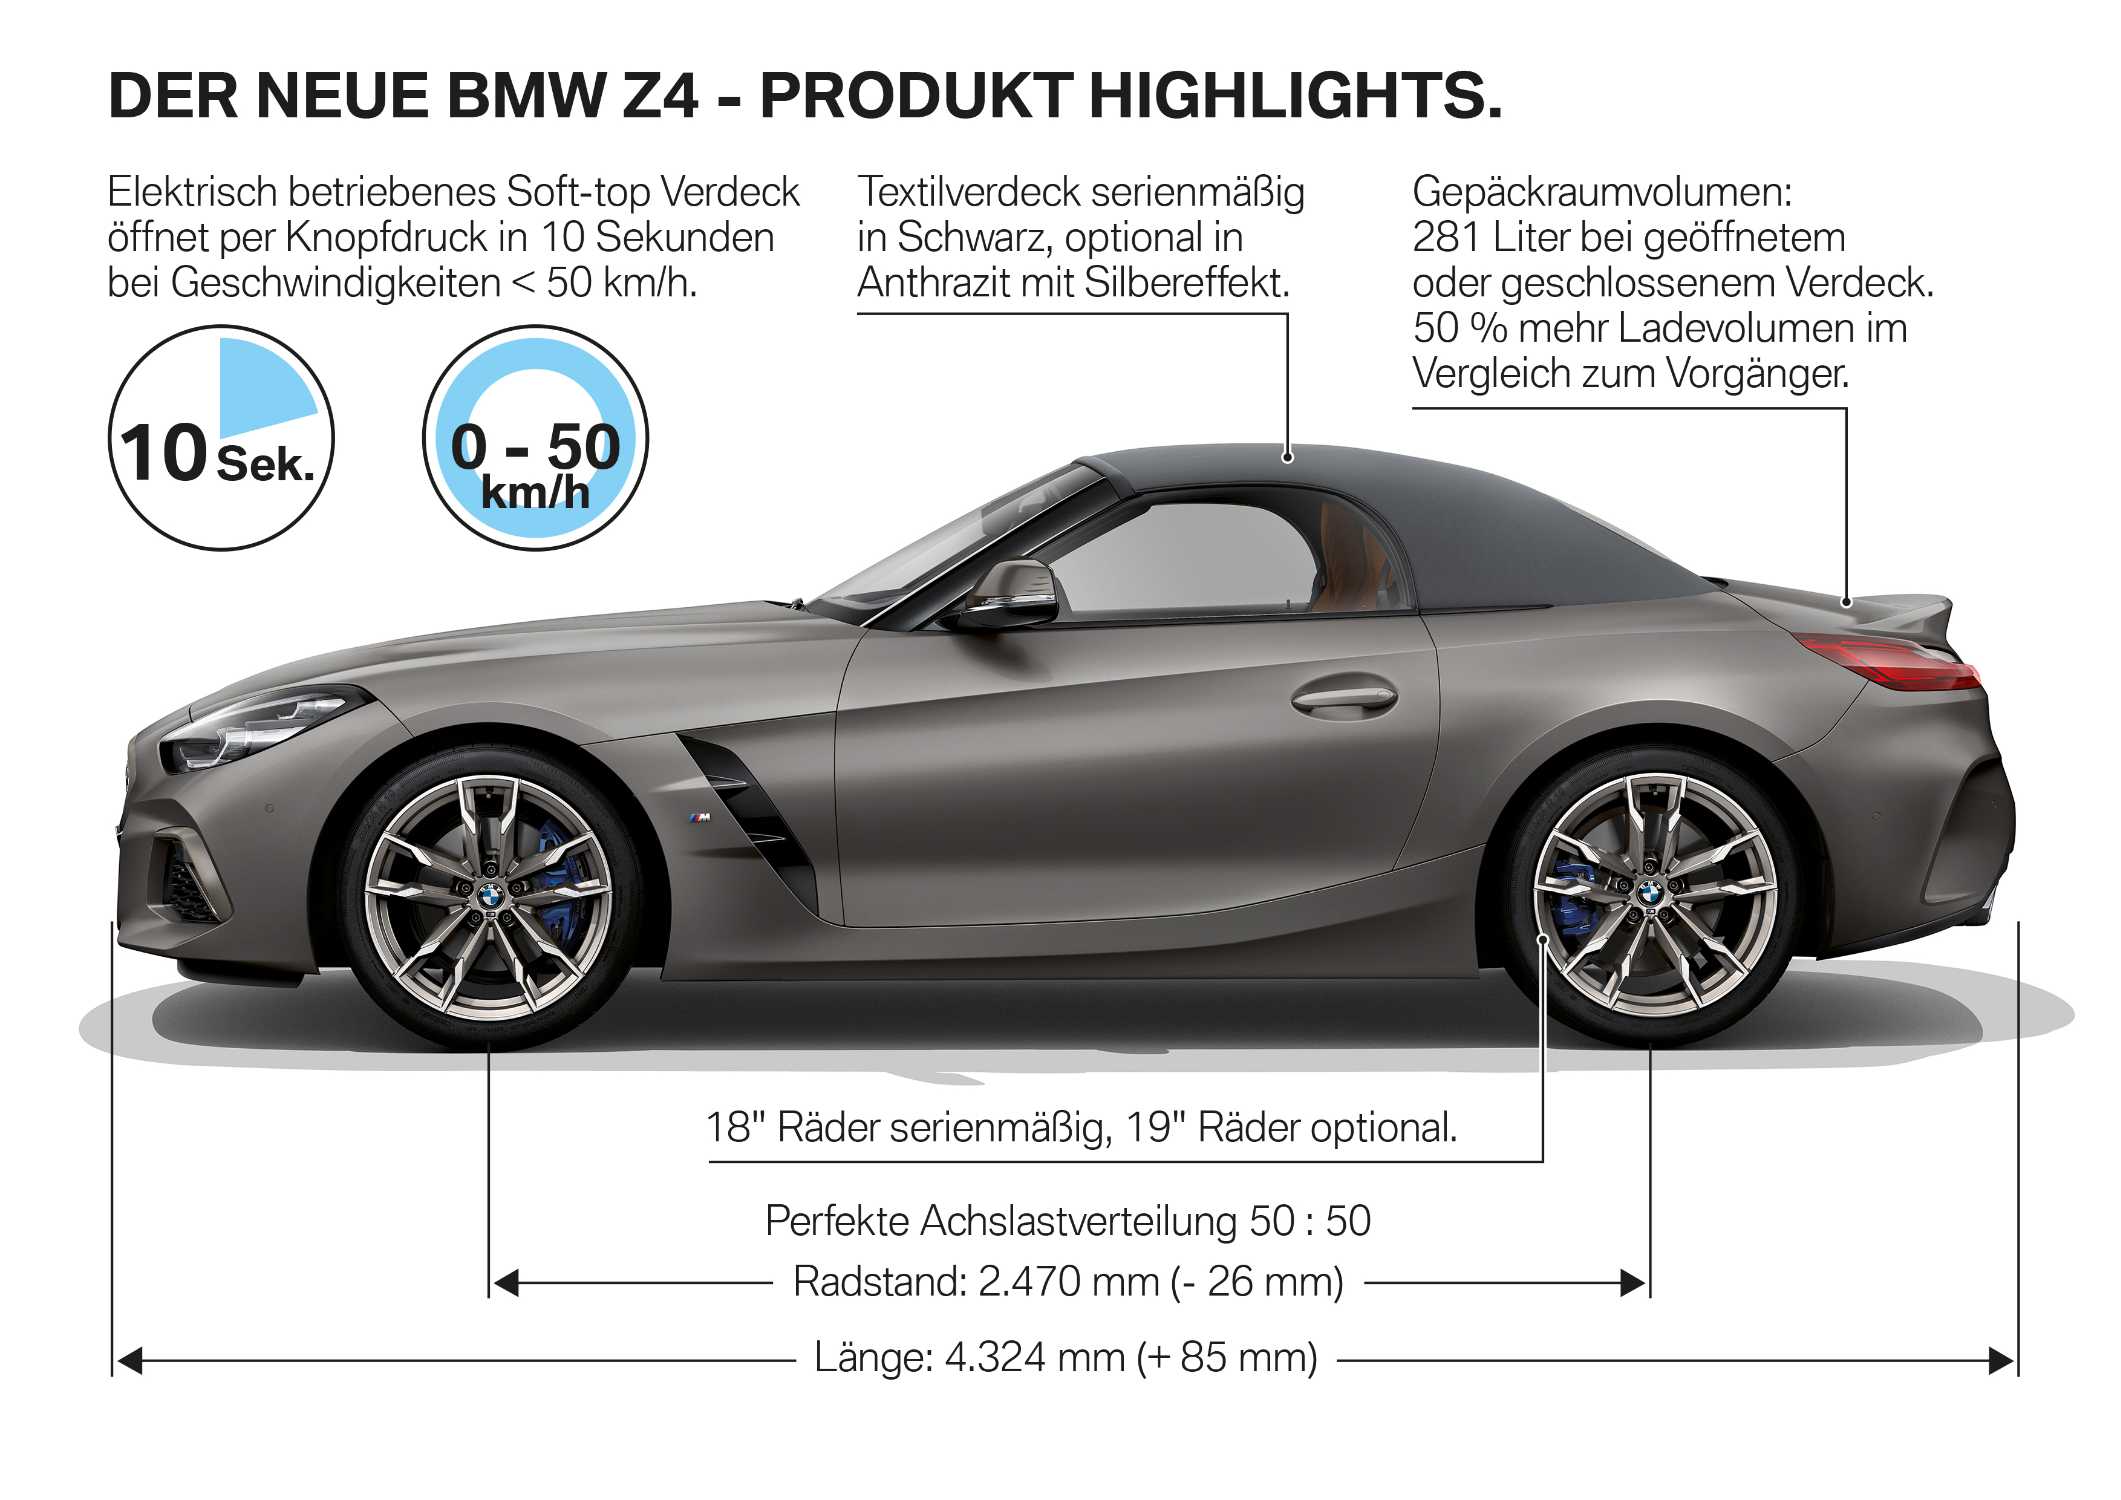 Der neue BMW Z4 - Produkt Highlights (09/2018).